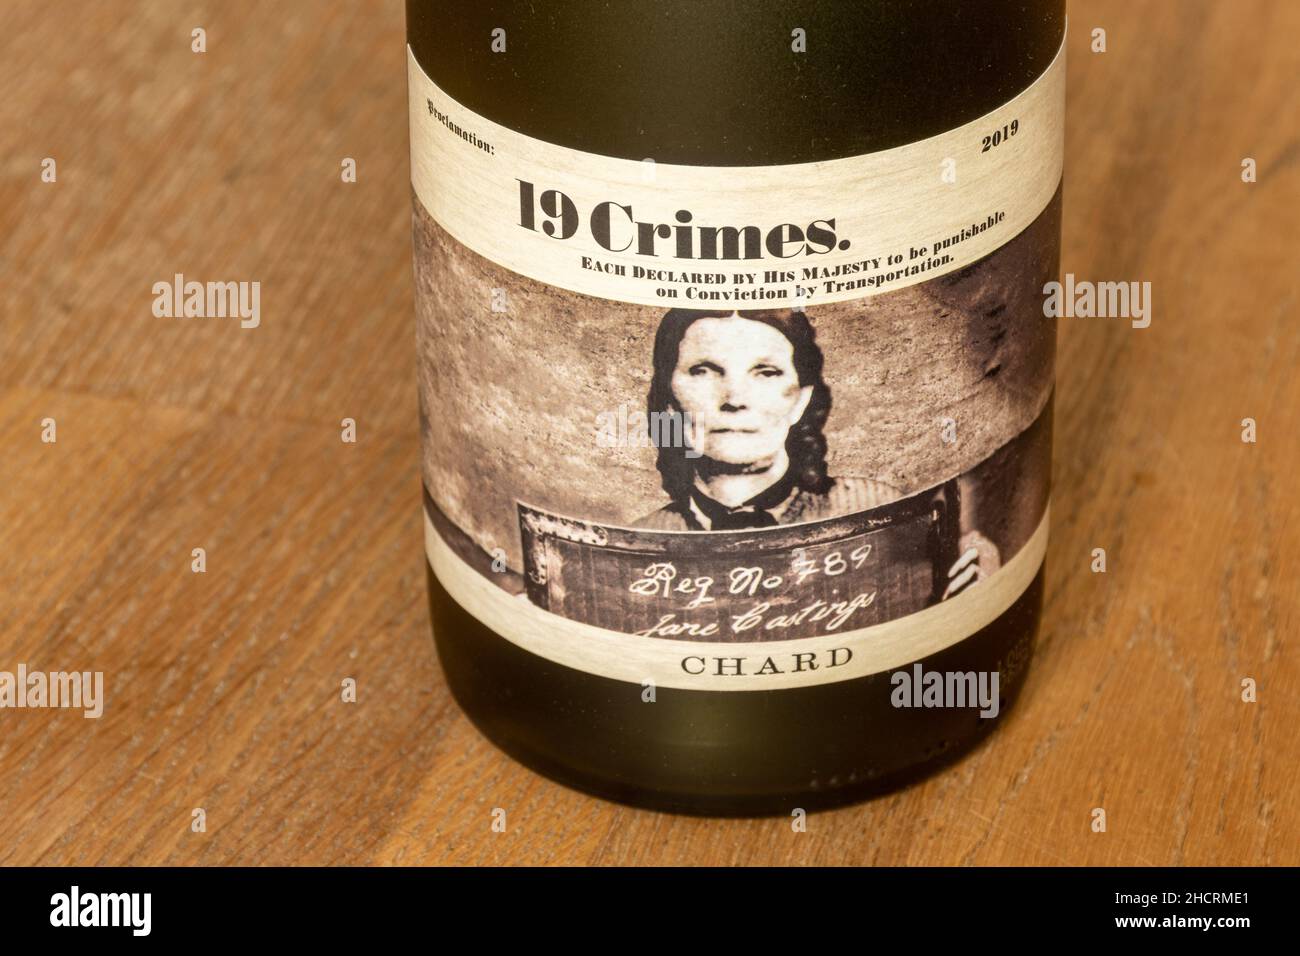 Bouteille de 19 vins australiens crimes (dix-neuf crimes), vin blanc, Chardonnay Banque D'Images